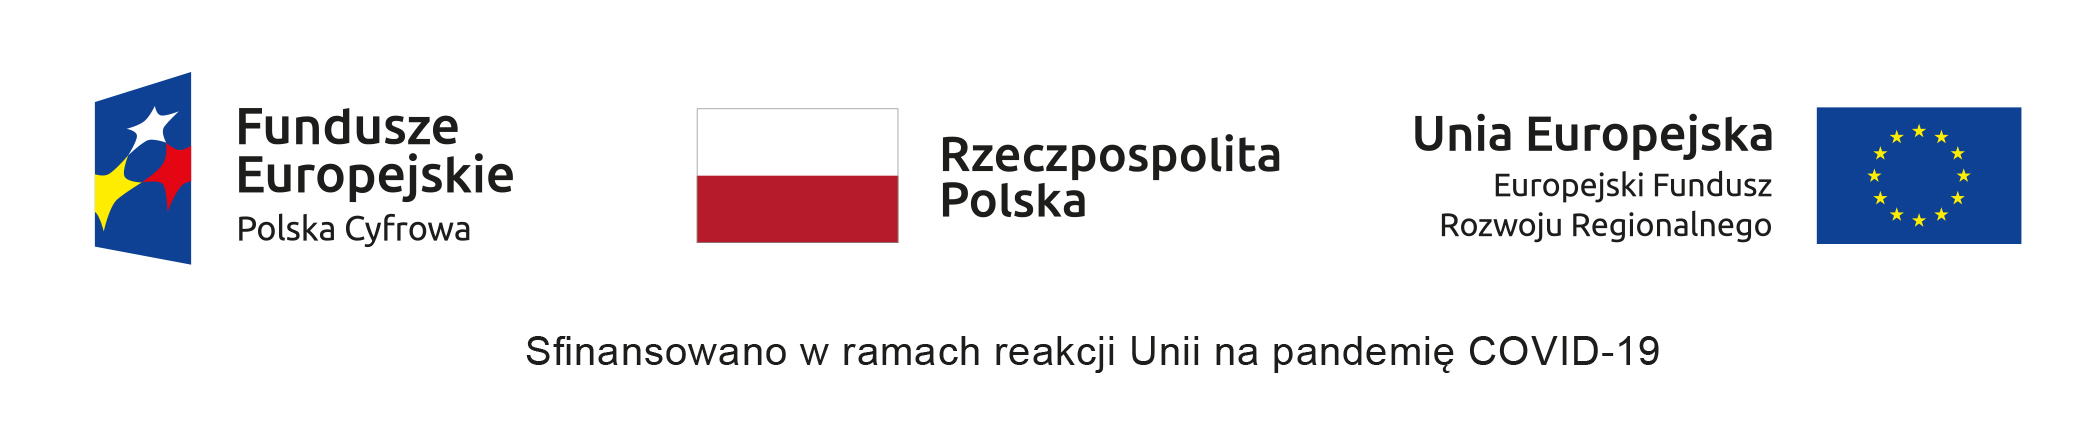 Na obrazku znajduja się 3 logotypy (Funduszy Europejskich Polska Cyfrowa, Rzeczpospolitej Polski, Uni Europejskej, Europejskiego Funduszu Rozwoju Regionalnego oraz napis "Sfinansowano w ramach reakcji Unii na pandemię COVID-19". 